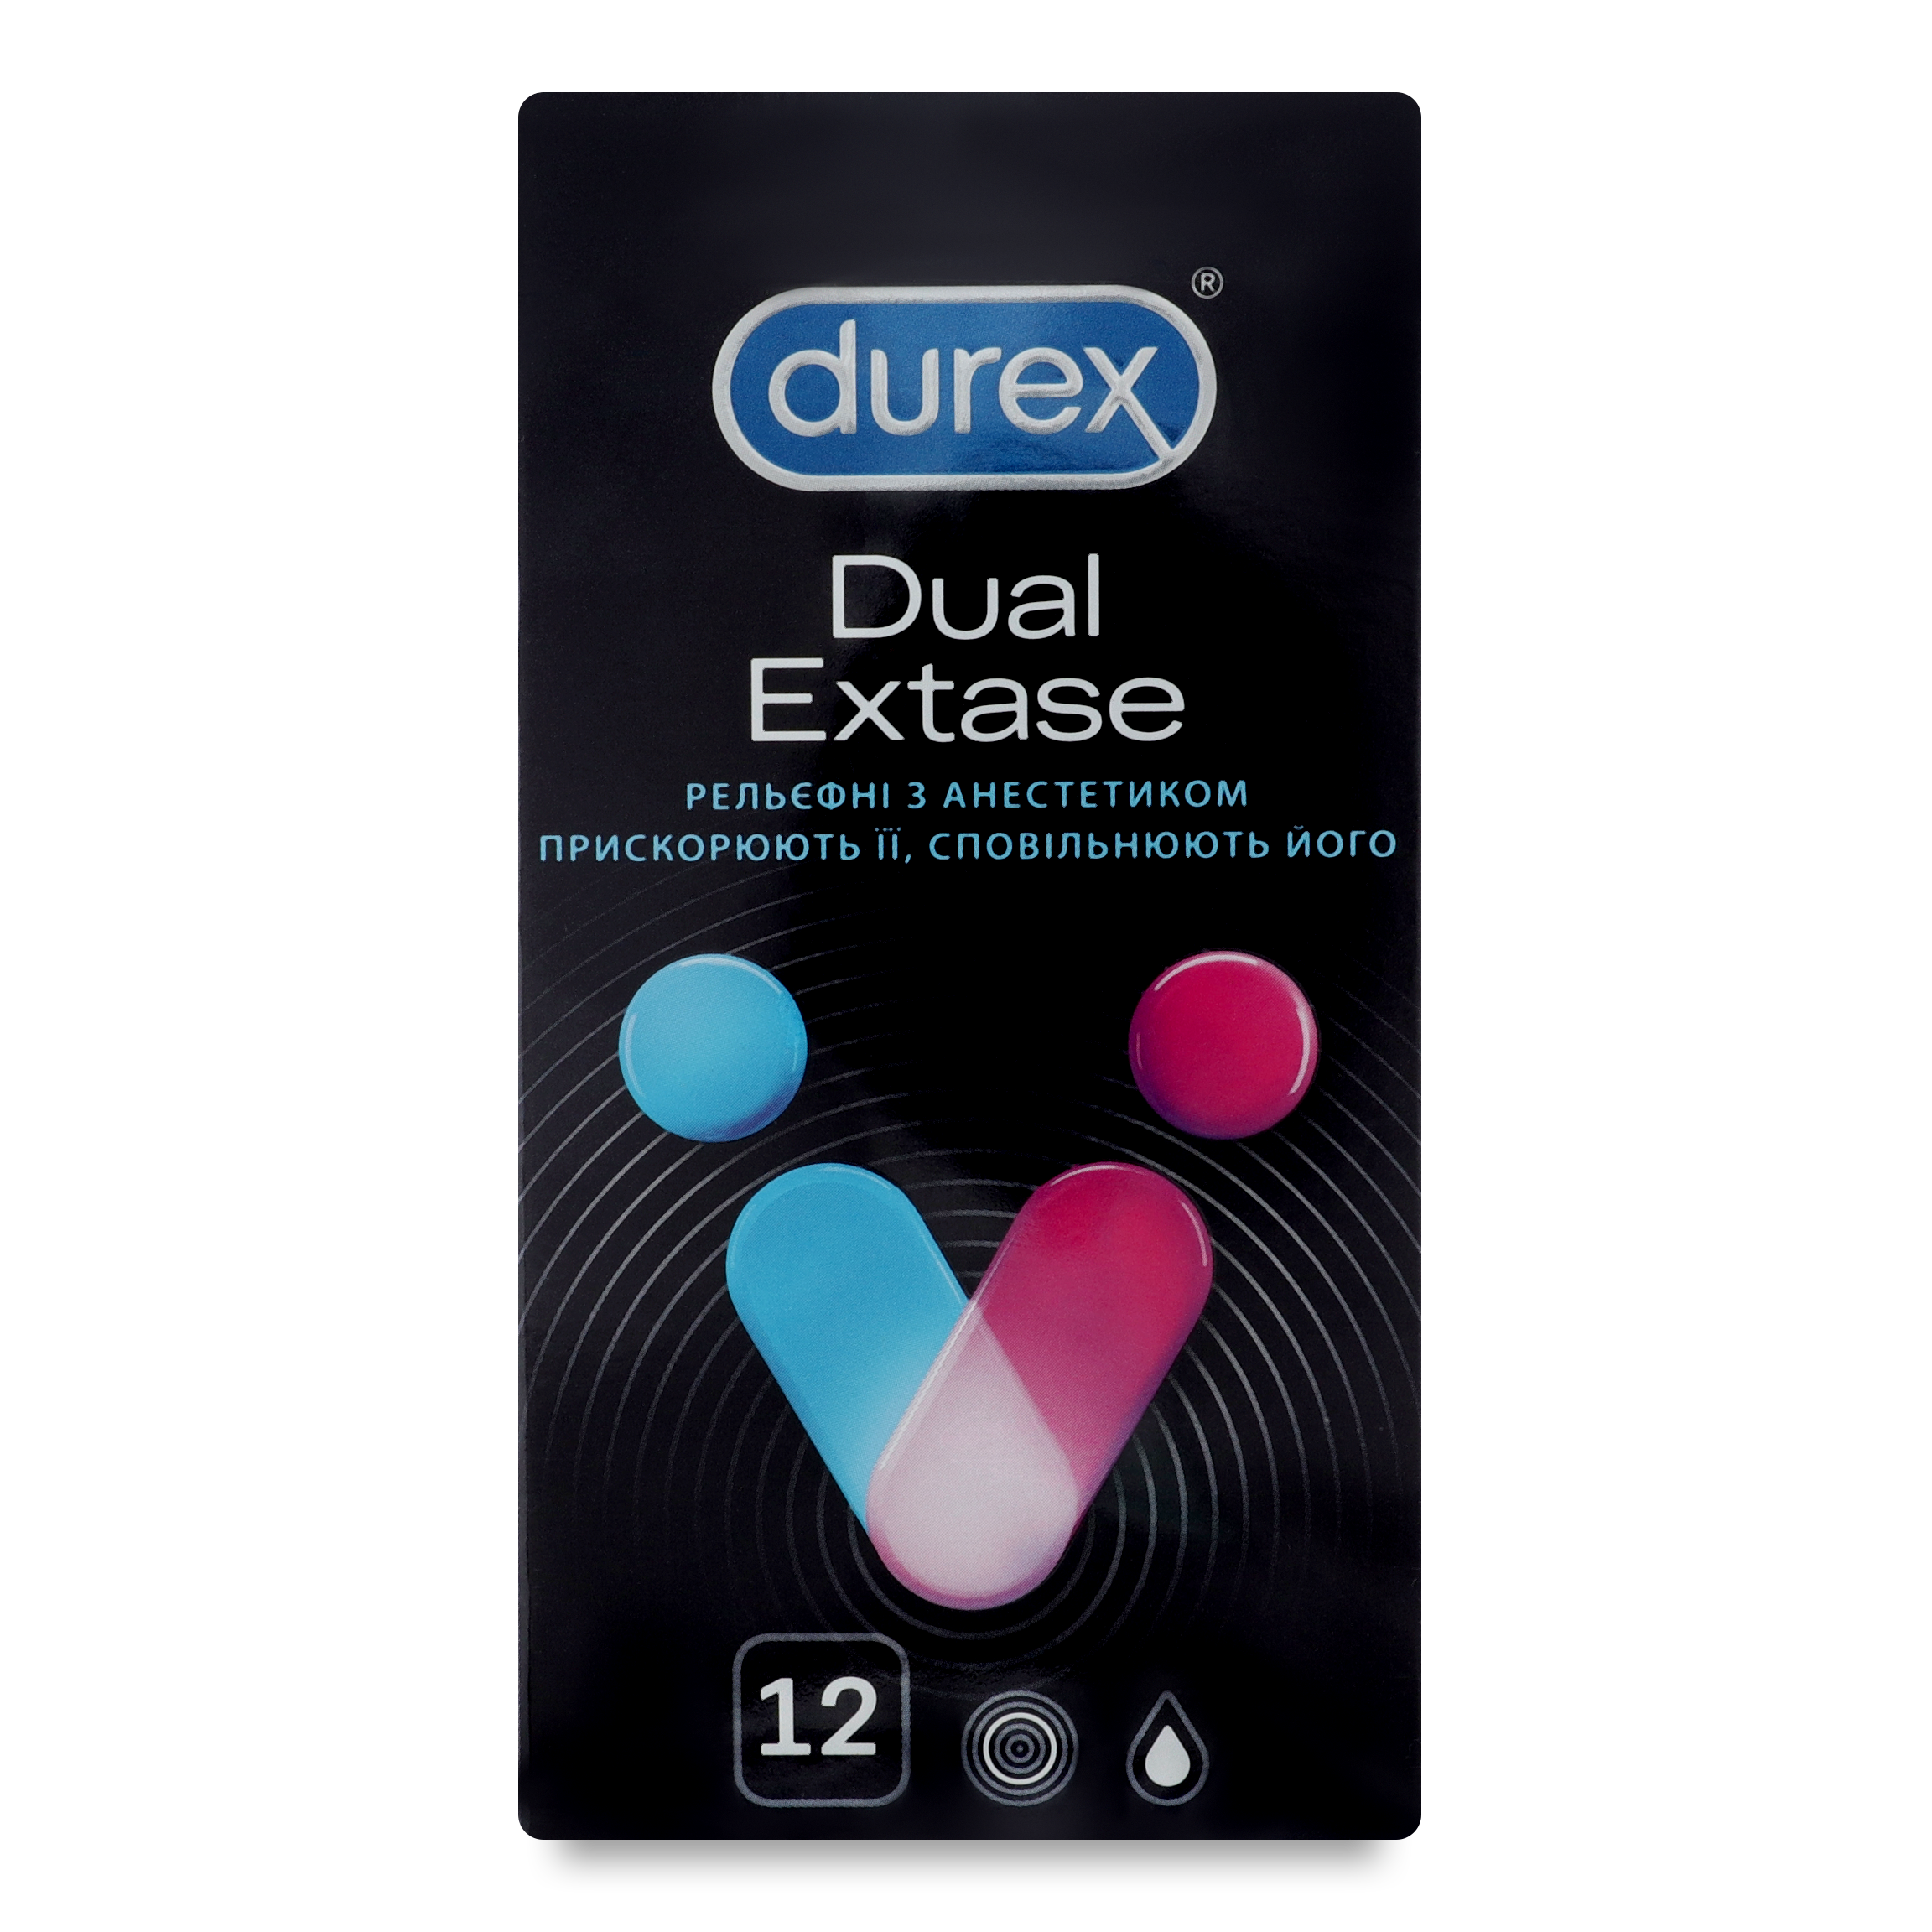 Durex Dual Extase Condoms 12pcs